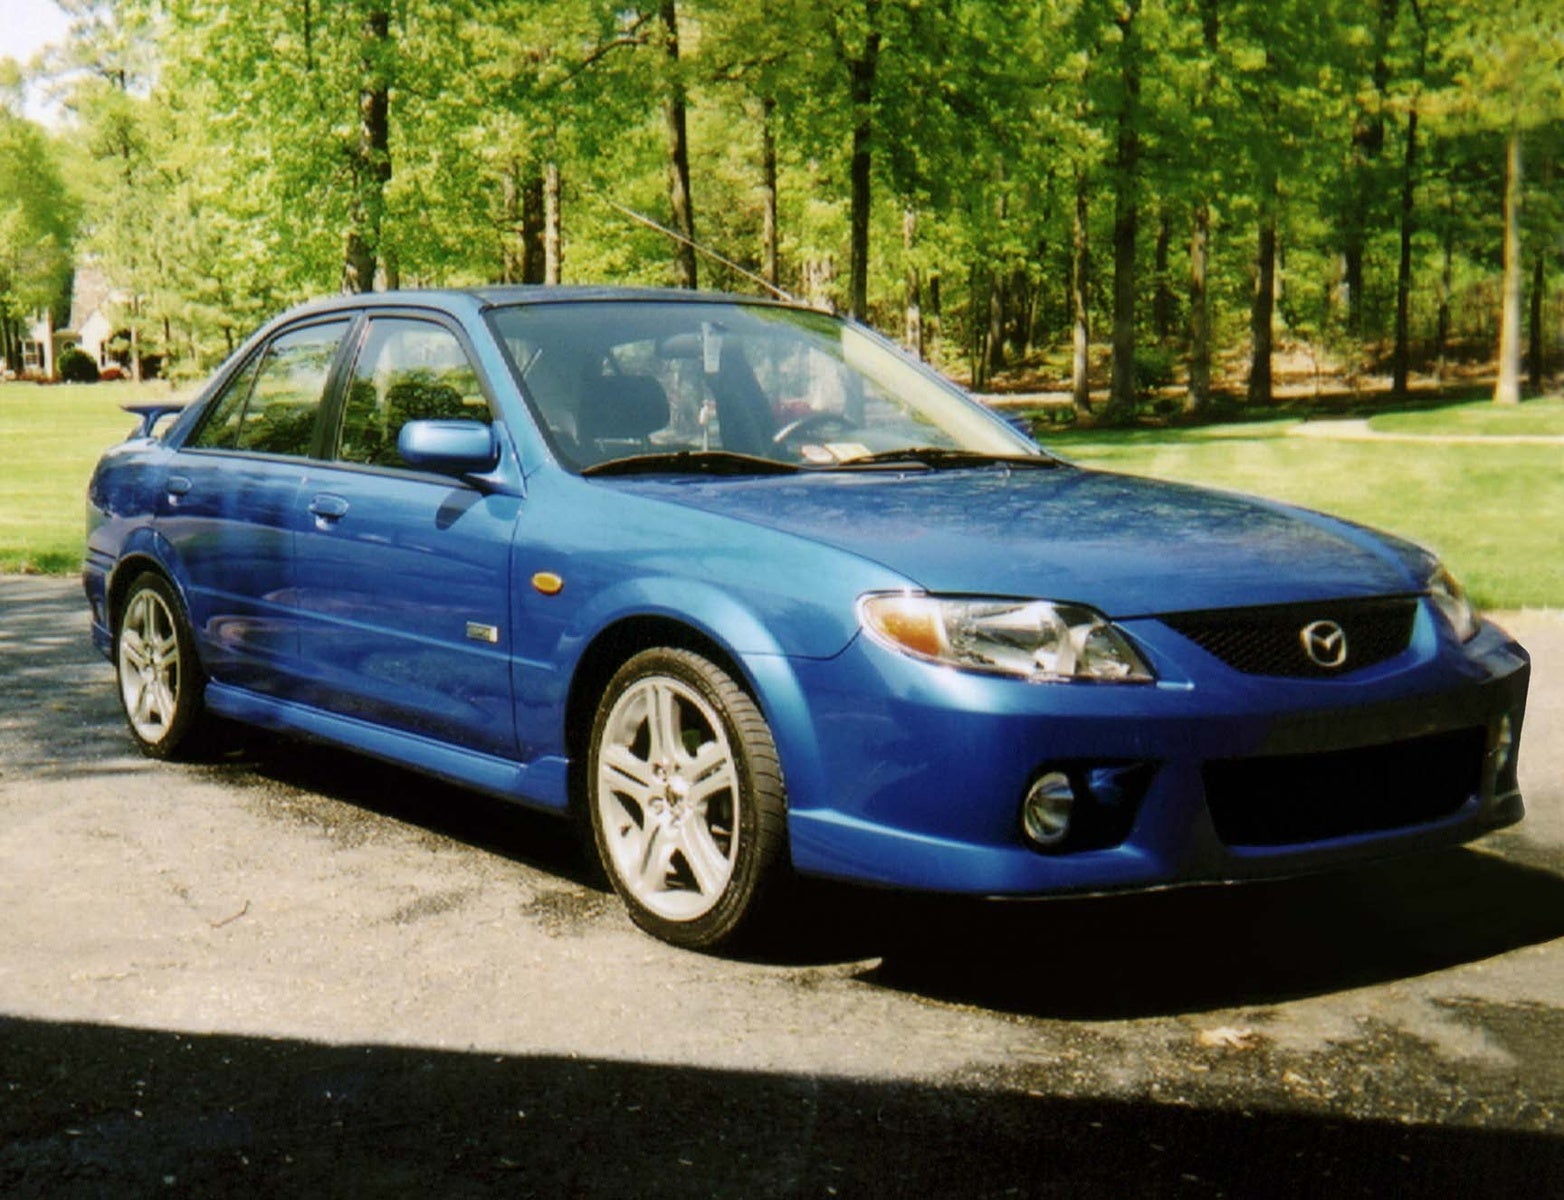 2001 Mazda Protege Exterior Pictures CarGurus.